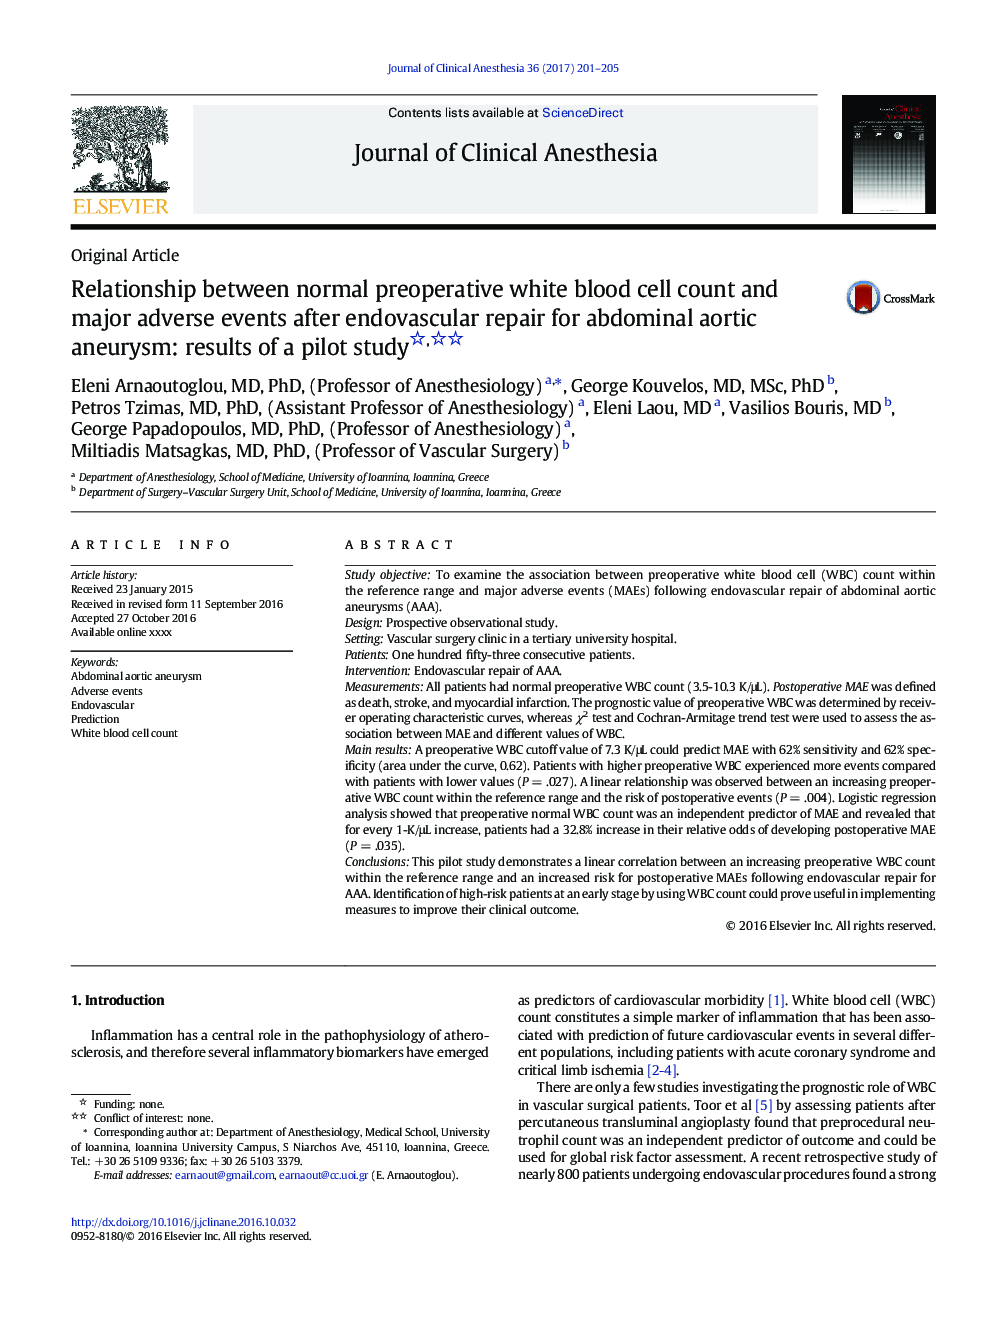 ارتباط بین شمارش گلبول های سفید خون قبل از عمل طبیعی و عوارض جانبی عمده پس از بهبود آندوسکوپی برای آنوریسم آئورت شکمی: نتایج یک مطالعه آزمایشی 